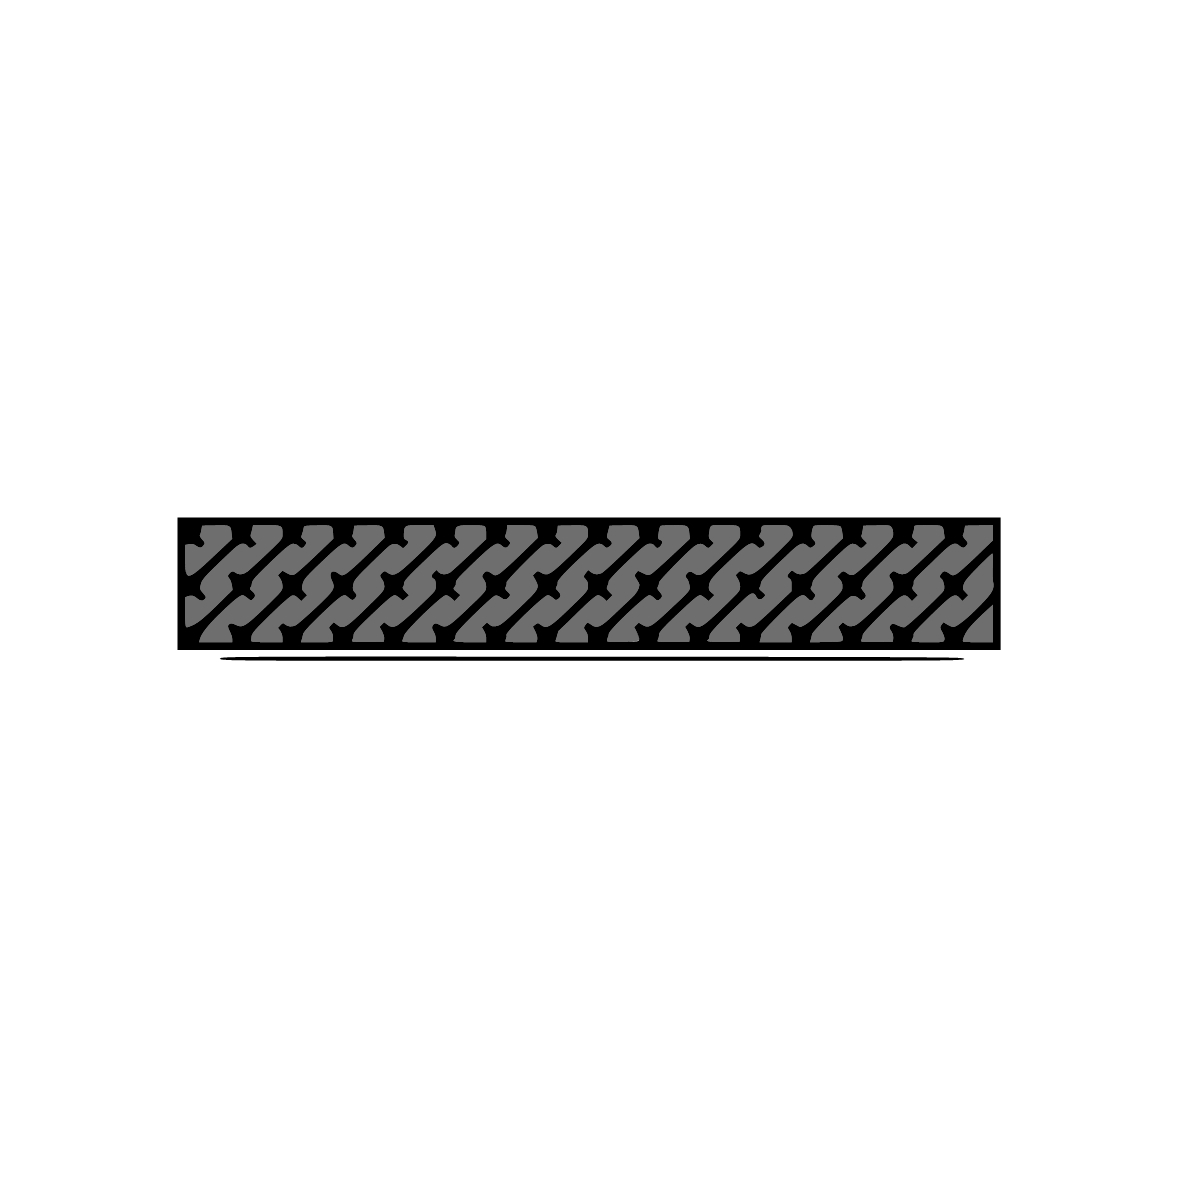 Moosgummidichtung selbstklebend | 25 mm Breite | Farbe: schwarz